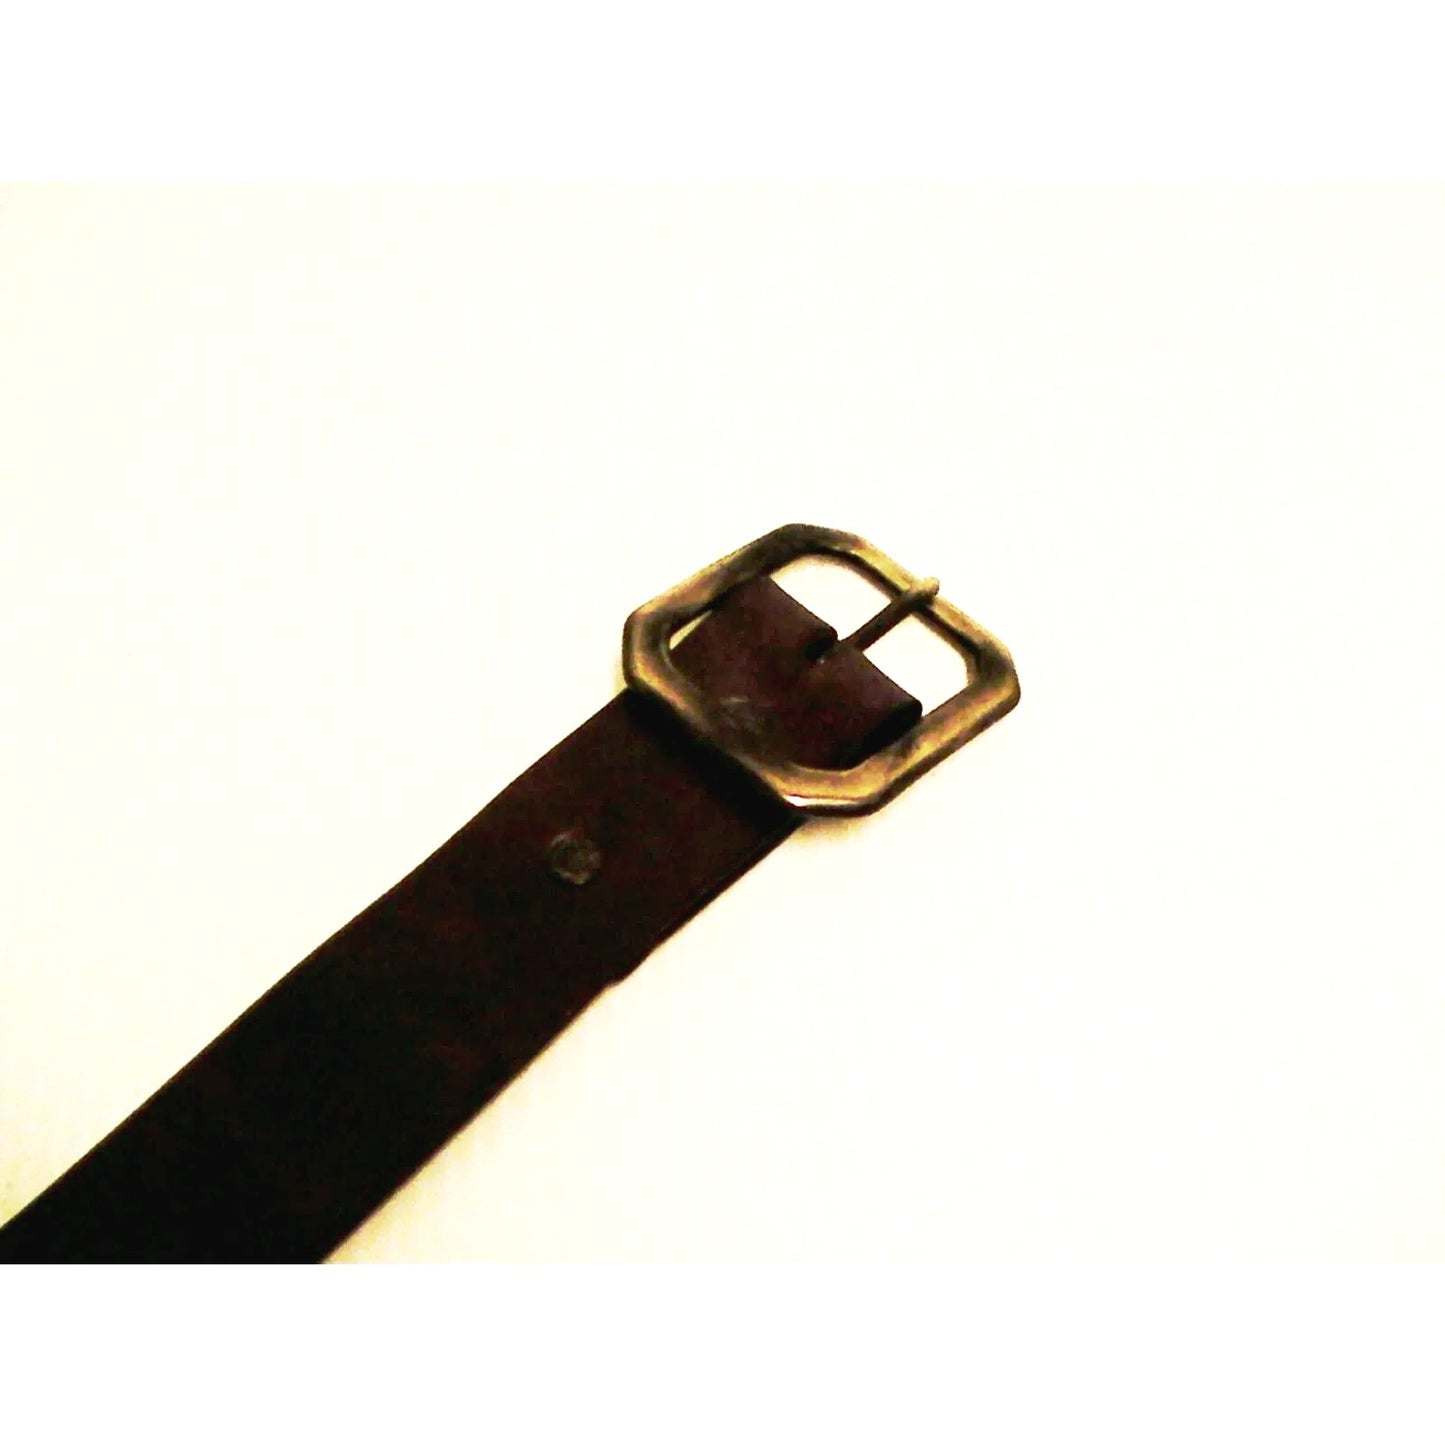 True religion genuine leather belt gunmetal buckle size 36 inch dark  brown new